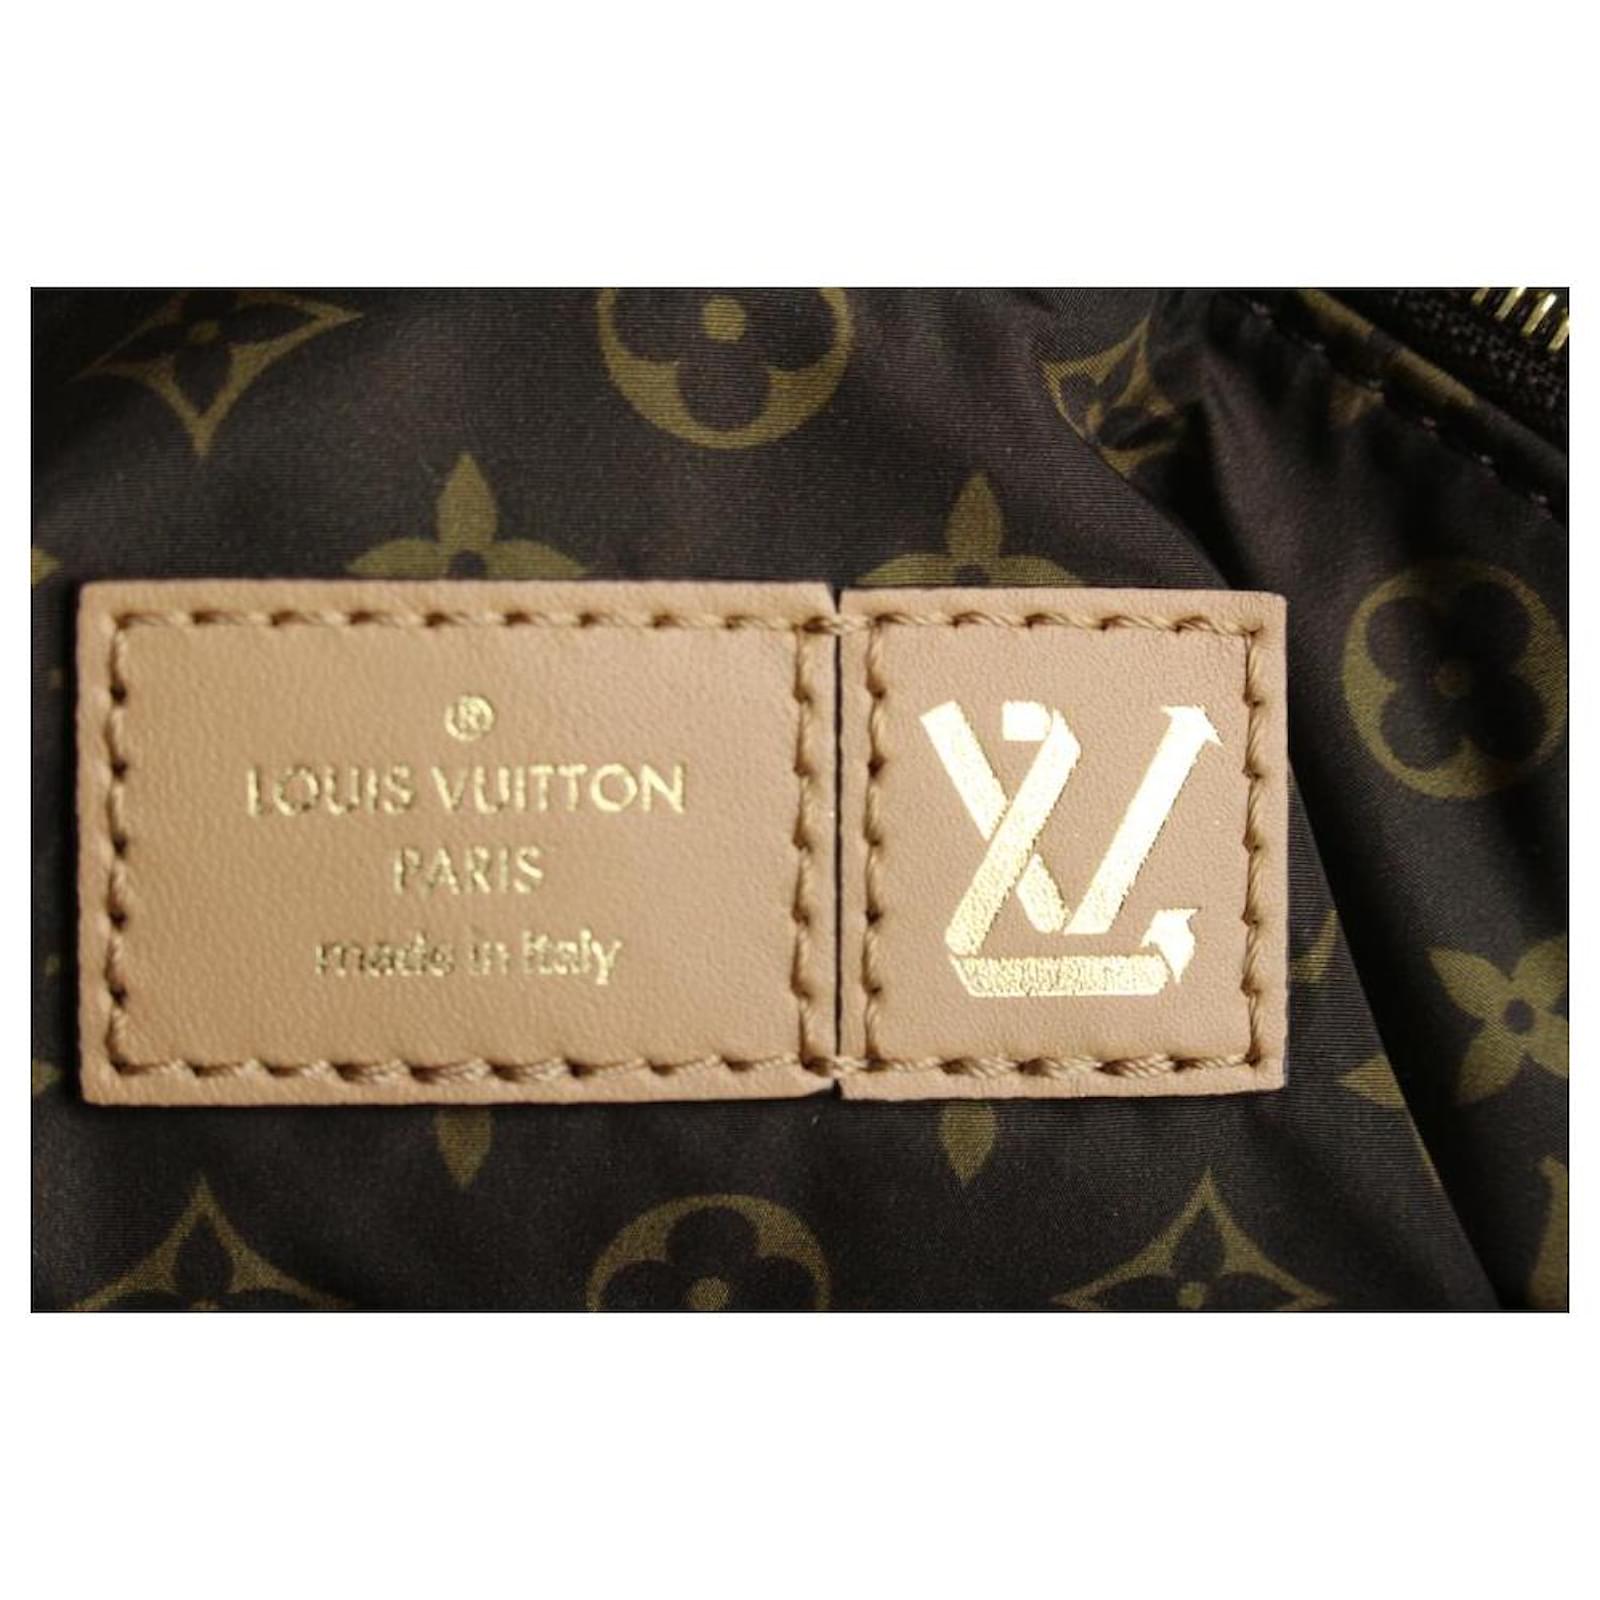 Authentic LOUIS VUITTON LV Pillow on the Go GM M59007 Bag #260-004-239-5461